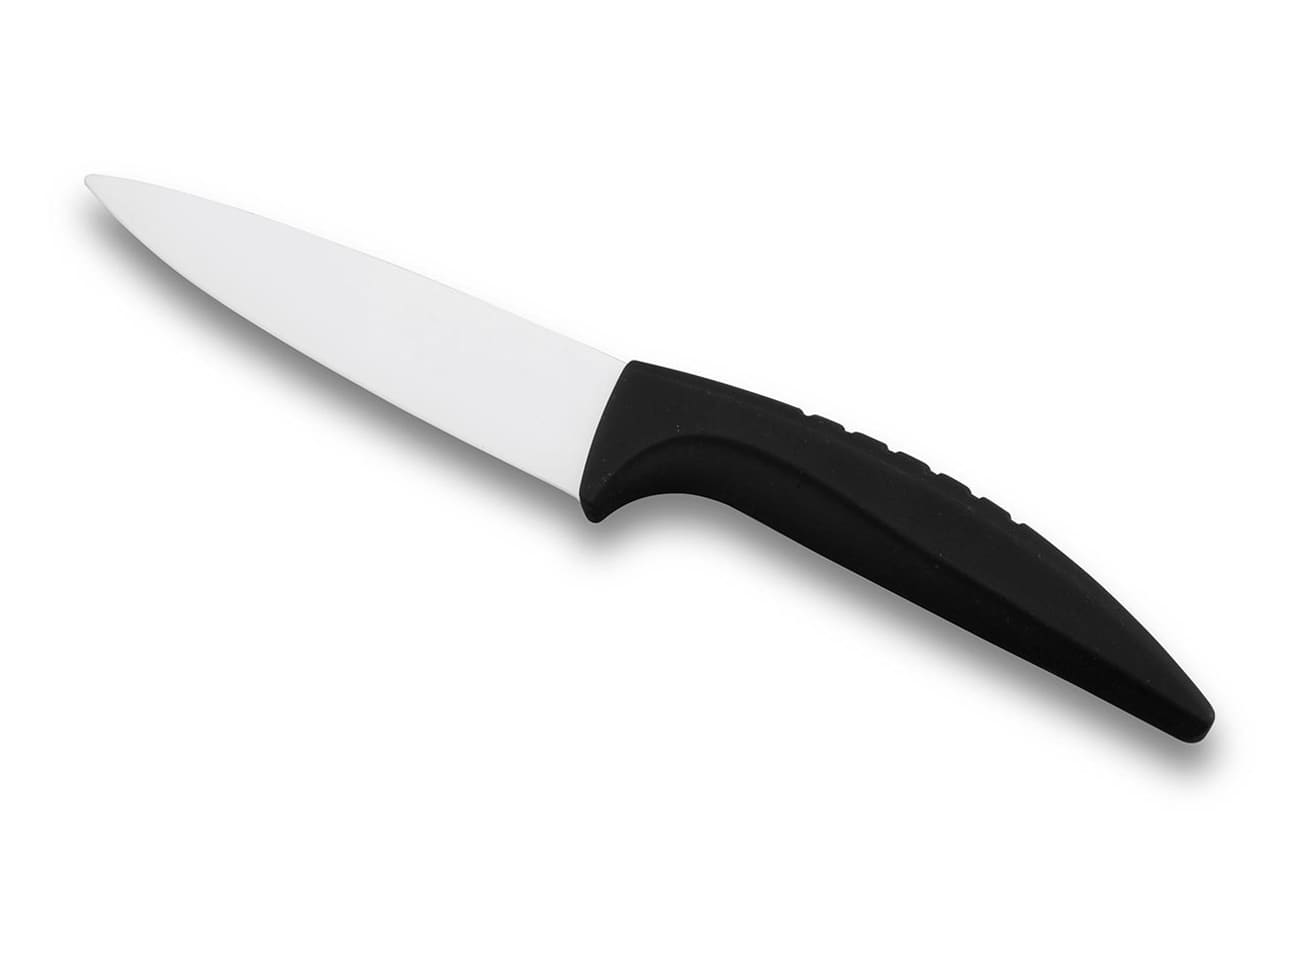 Samurai couteau ceramique 3 pcs,10/12 15 cm, blanc, couteau